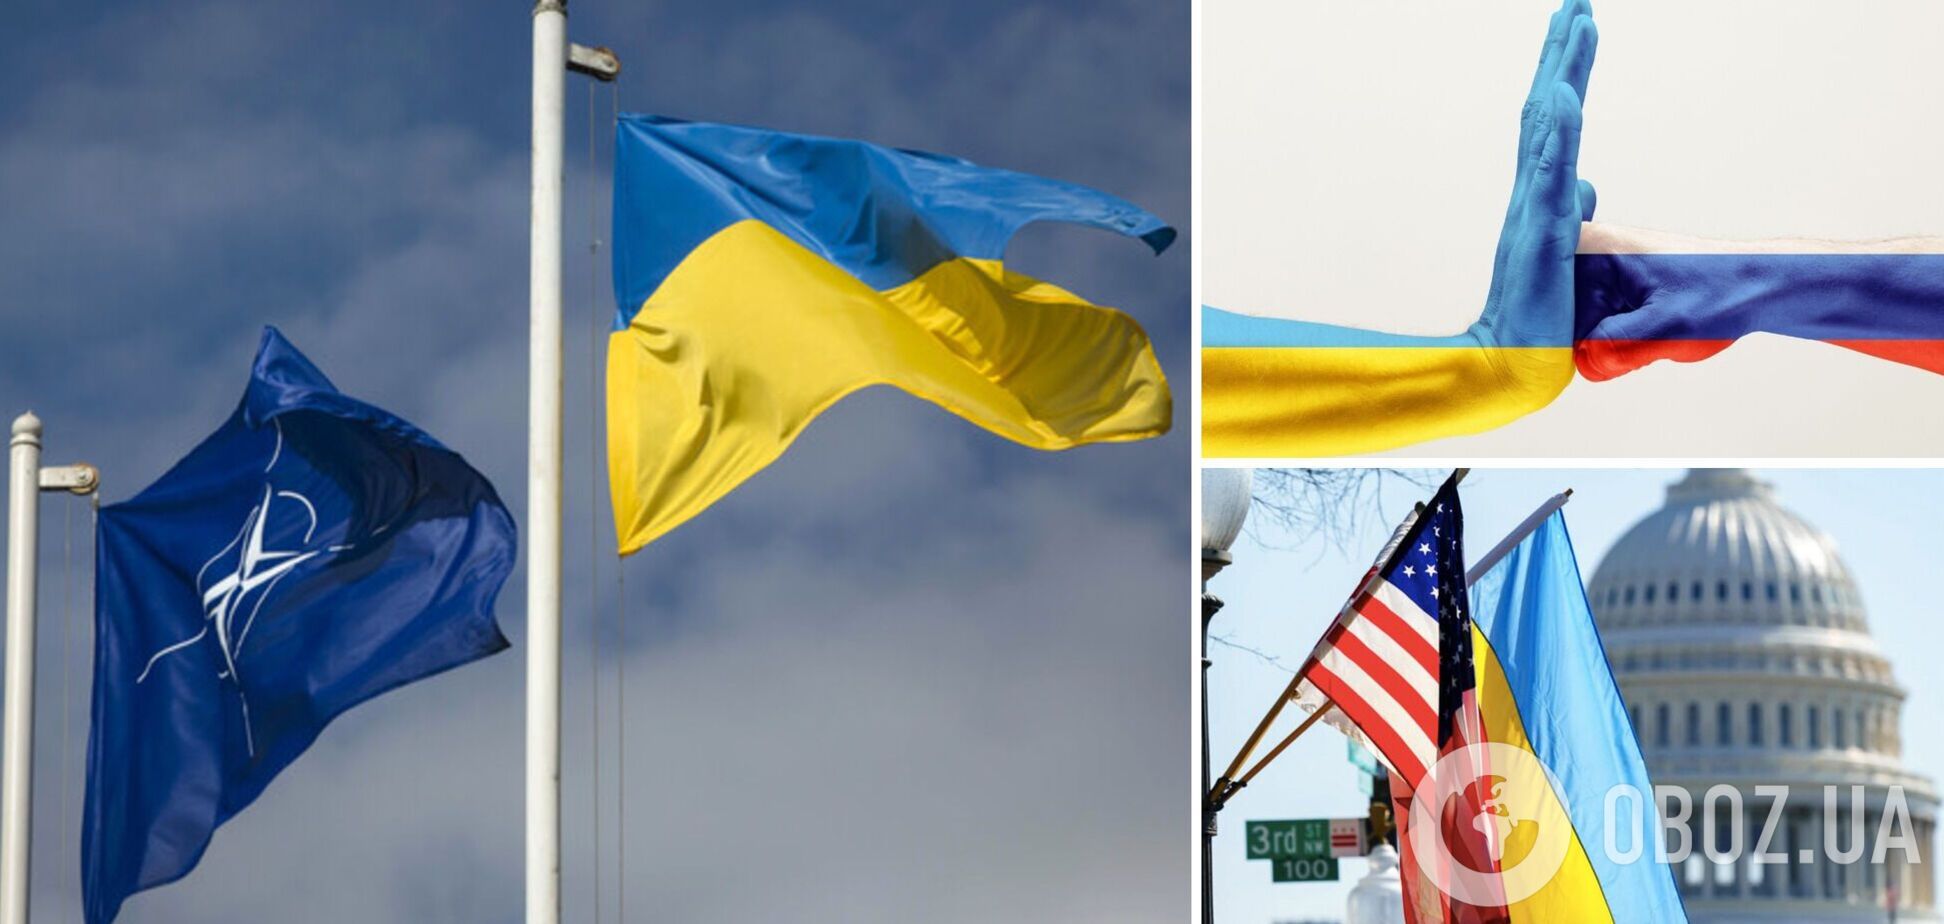 Гудименко закликав діаспору допомогти з пришвидшенням надання західної підтримки Україні